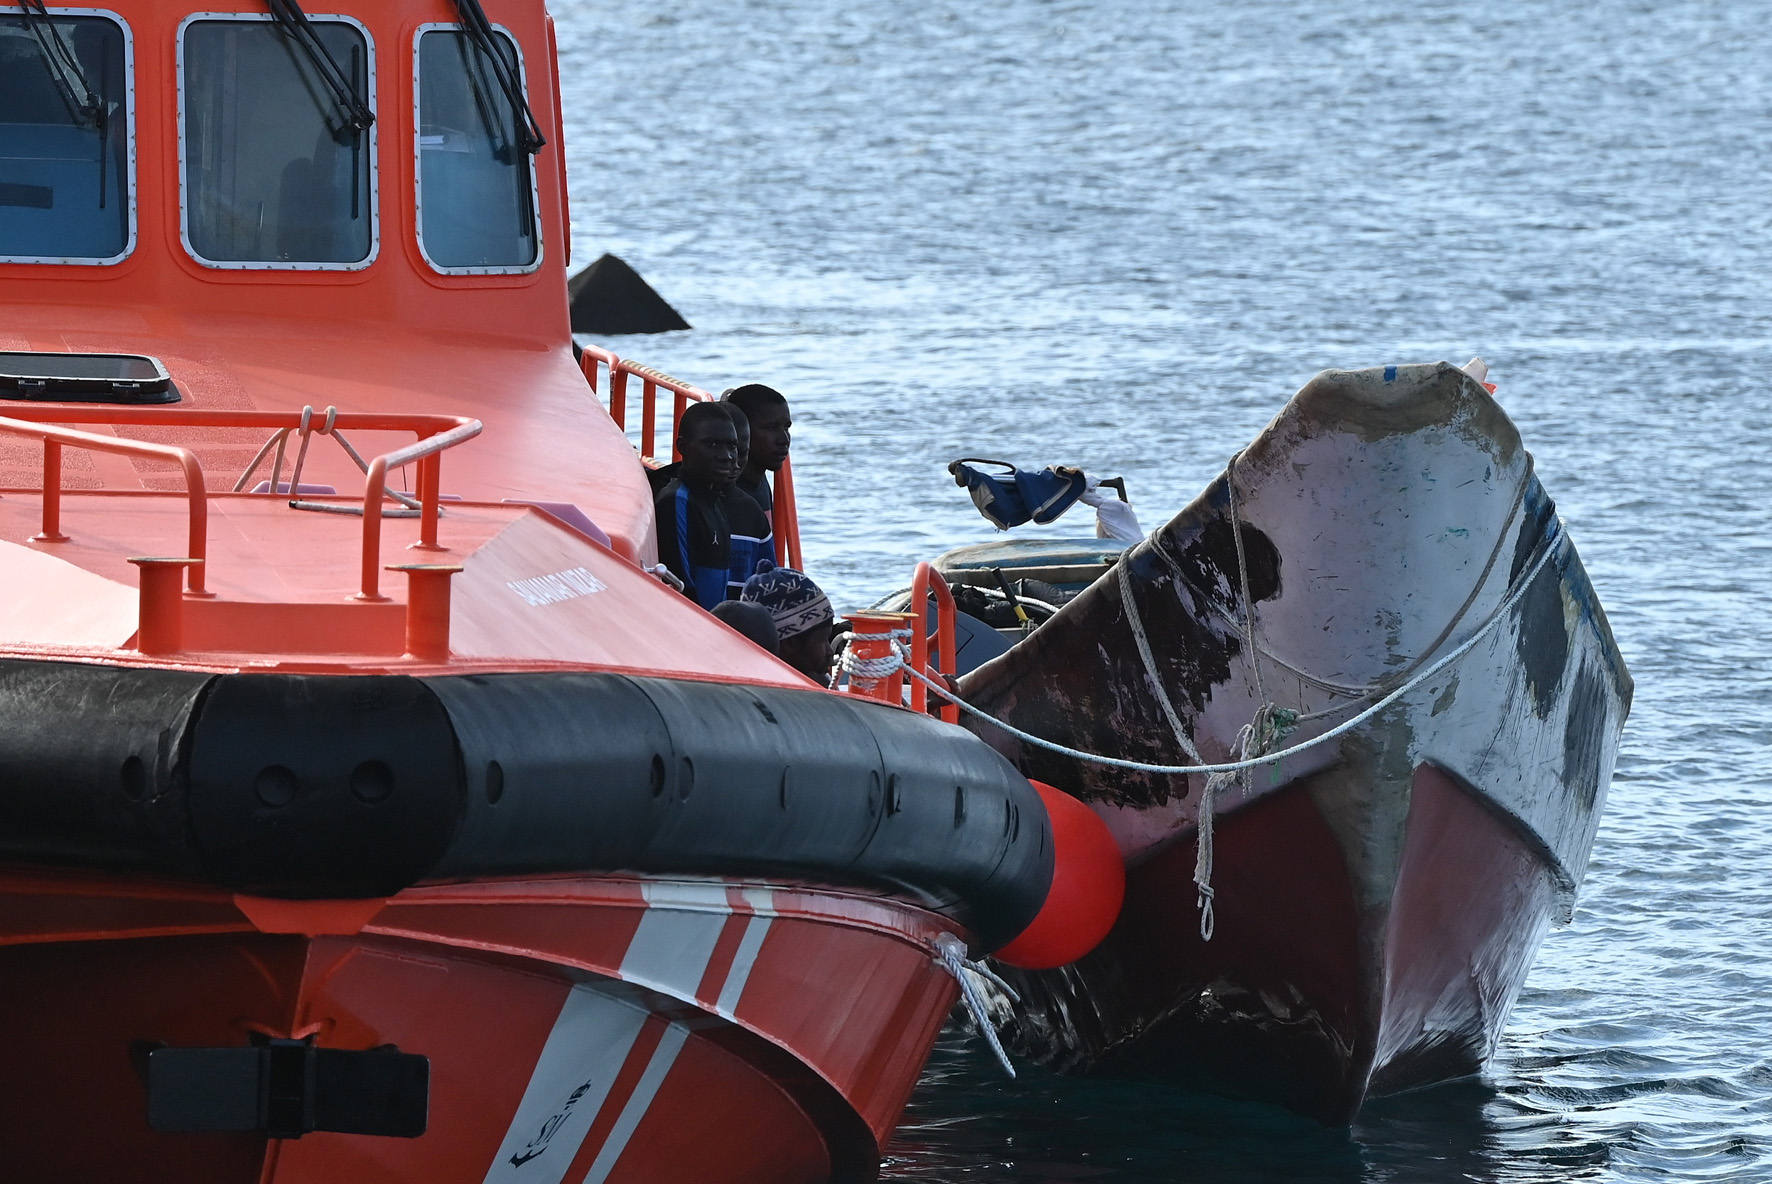 Salvamento Marítimo rescata a 106 inmigrantes a bordo de 2 embarcaciones en aguas cercanas a El Hierro